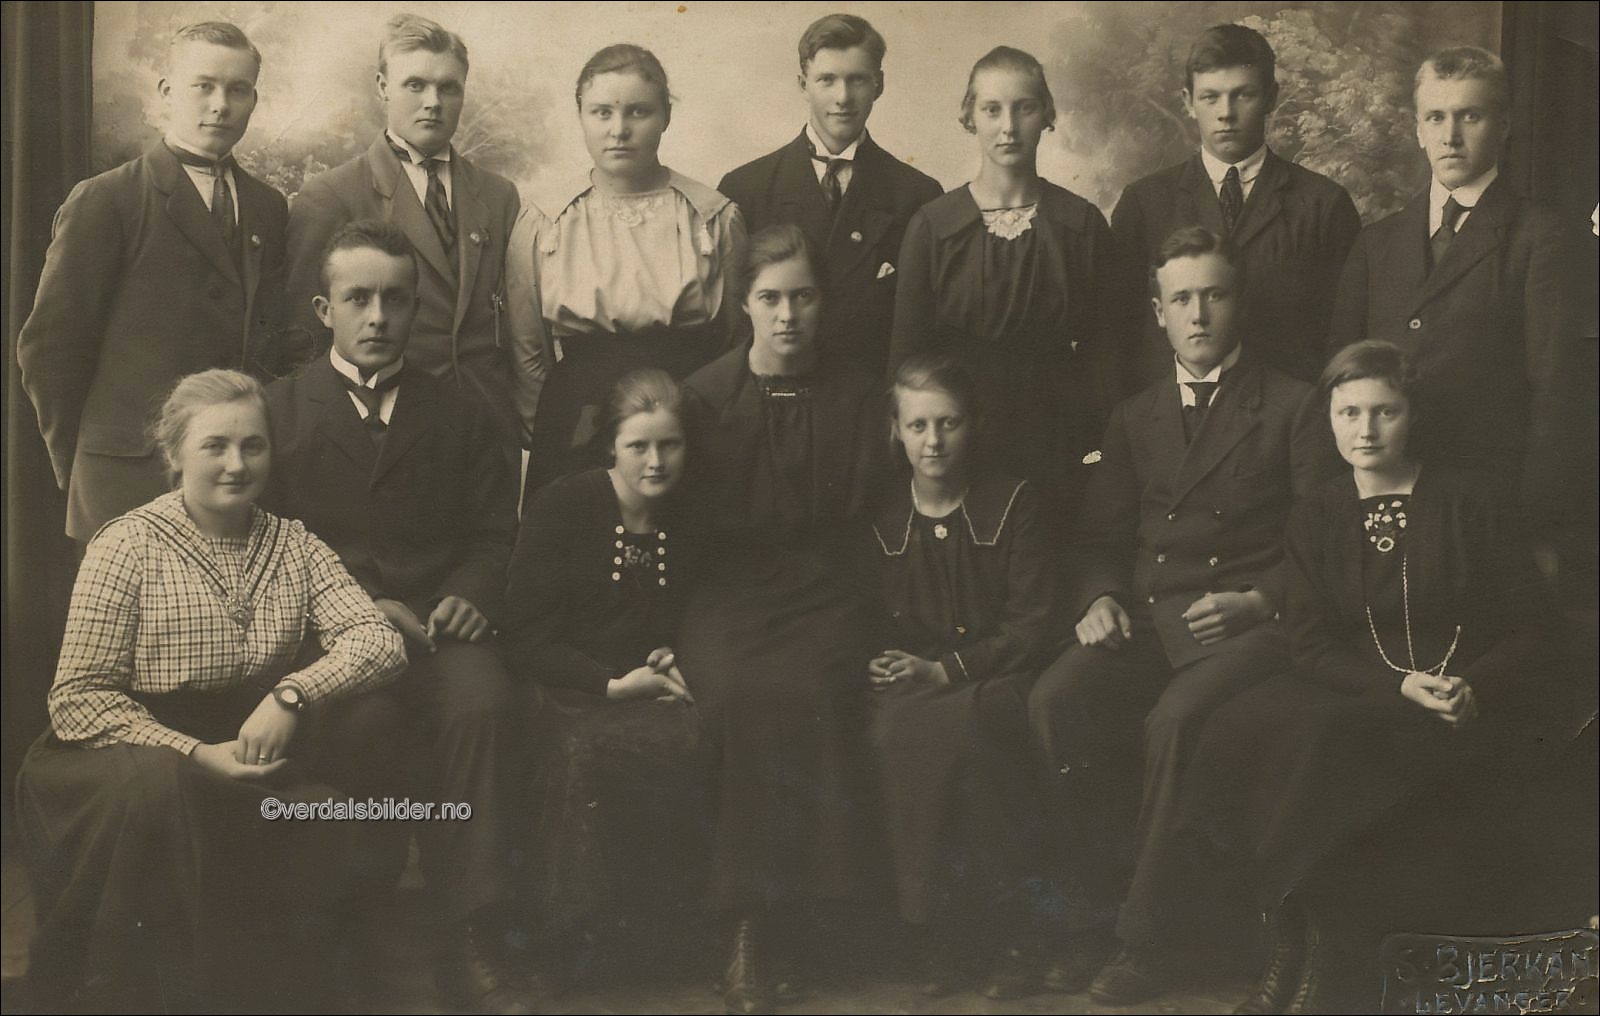  Iflge. oversikt i Verdalsboka har alle av disse som ble lærere her i kommunen tatt eksamen i mellom 1921 og 1923. Utlånt med navna av Arve Kålen.